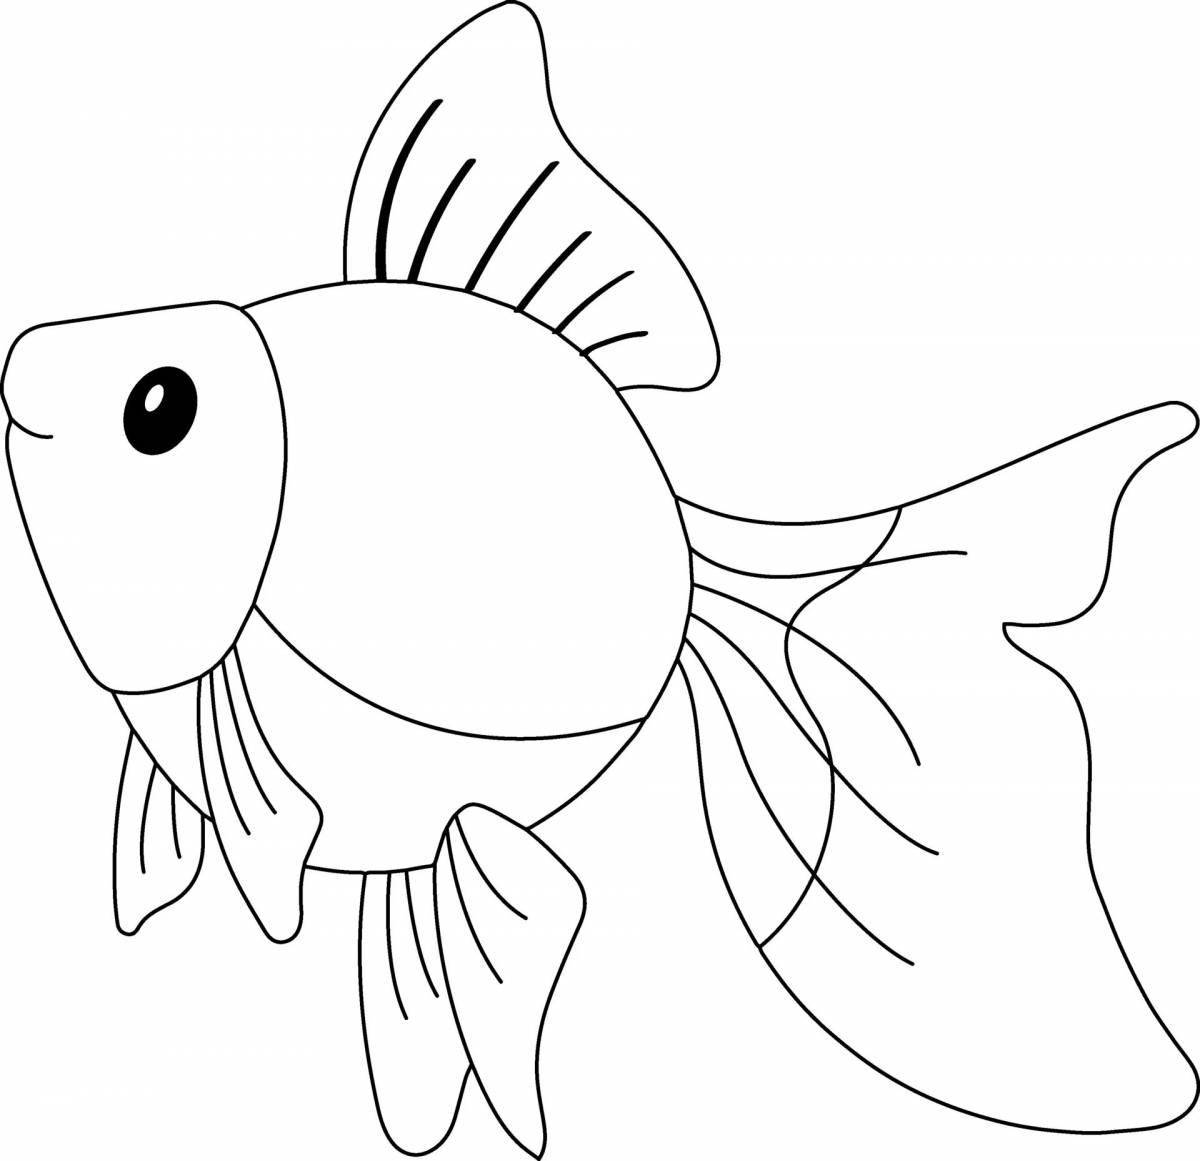 Милая раскраска с золотыми рыбками для детей 3-4 лет